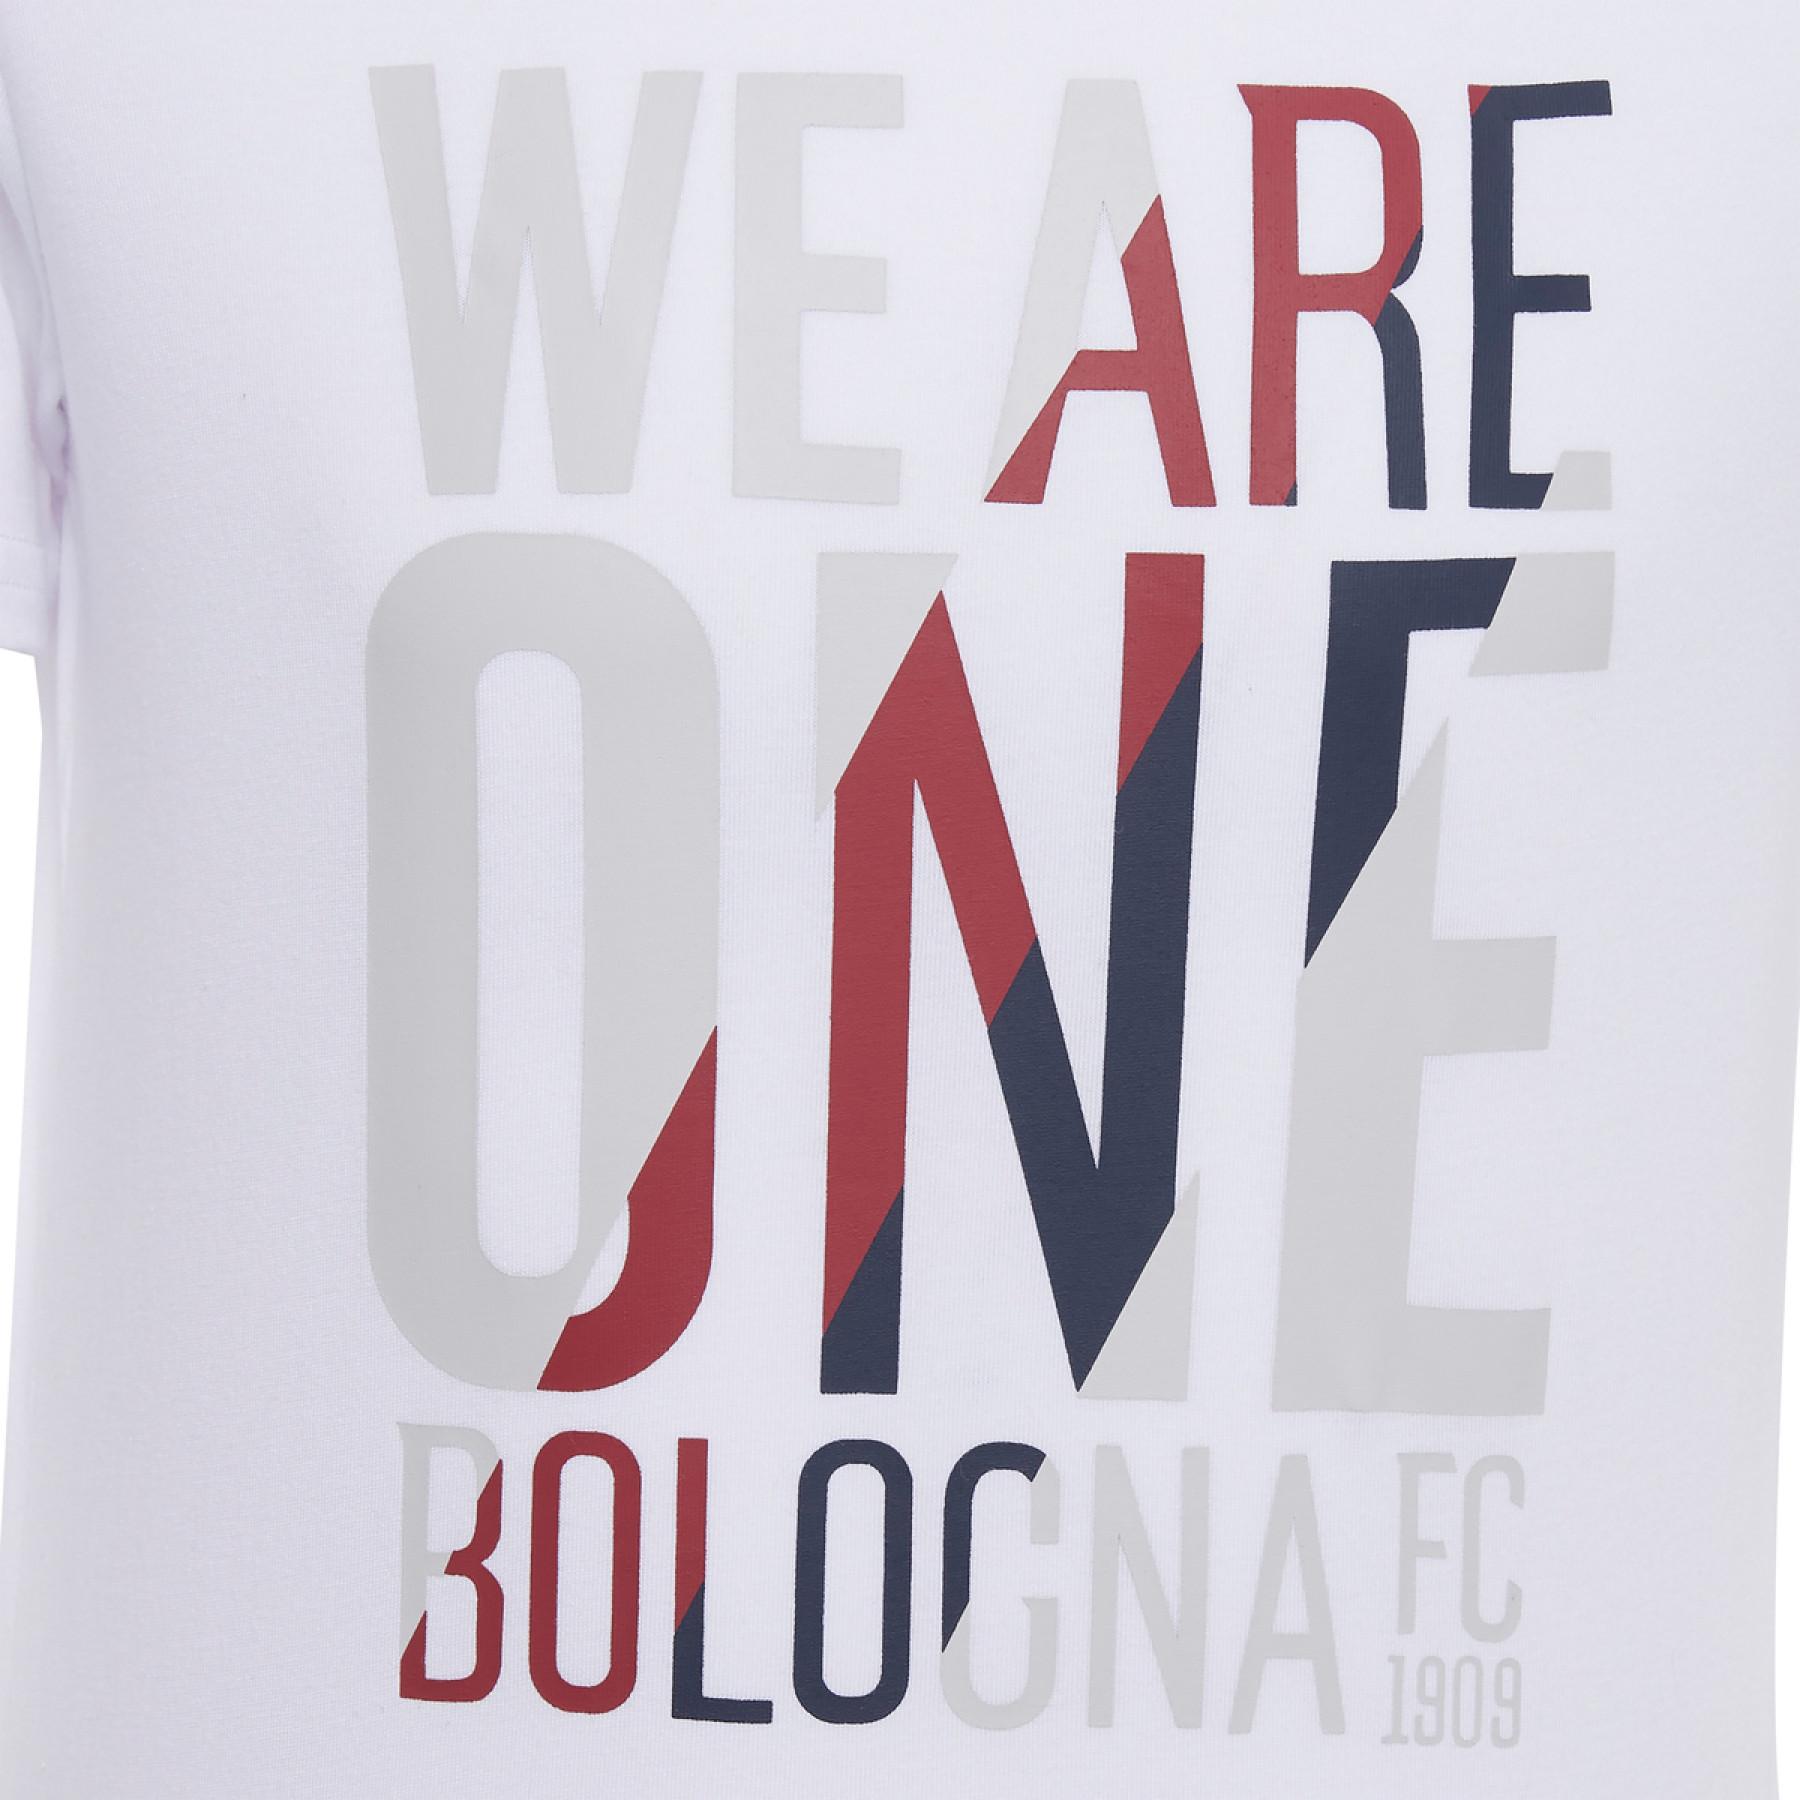 T-shirt criança algodão Bologne 2020/21